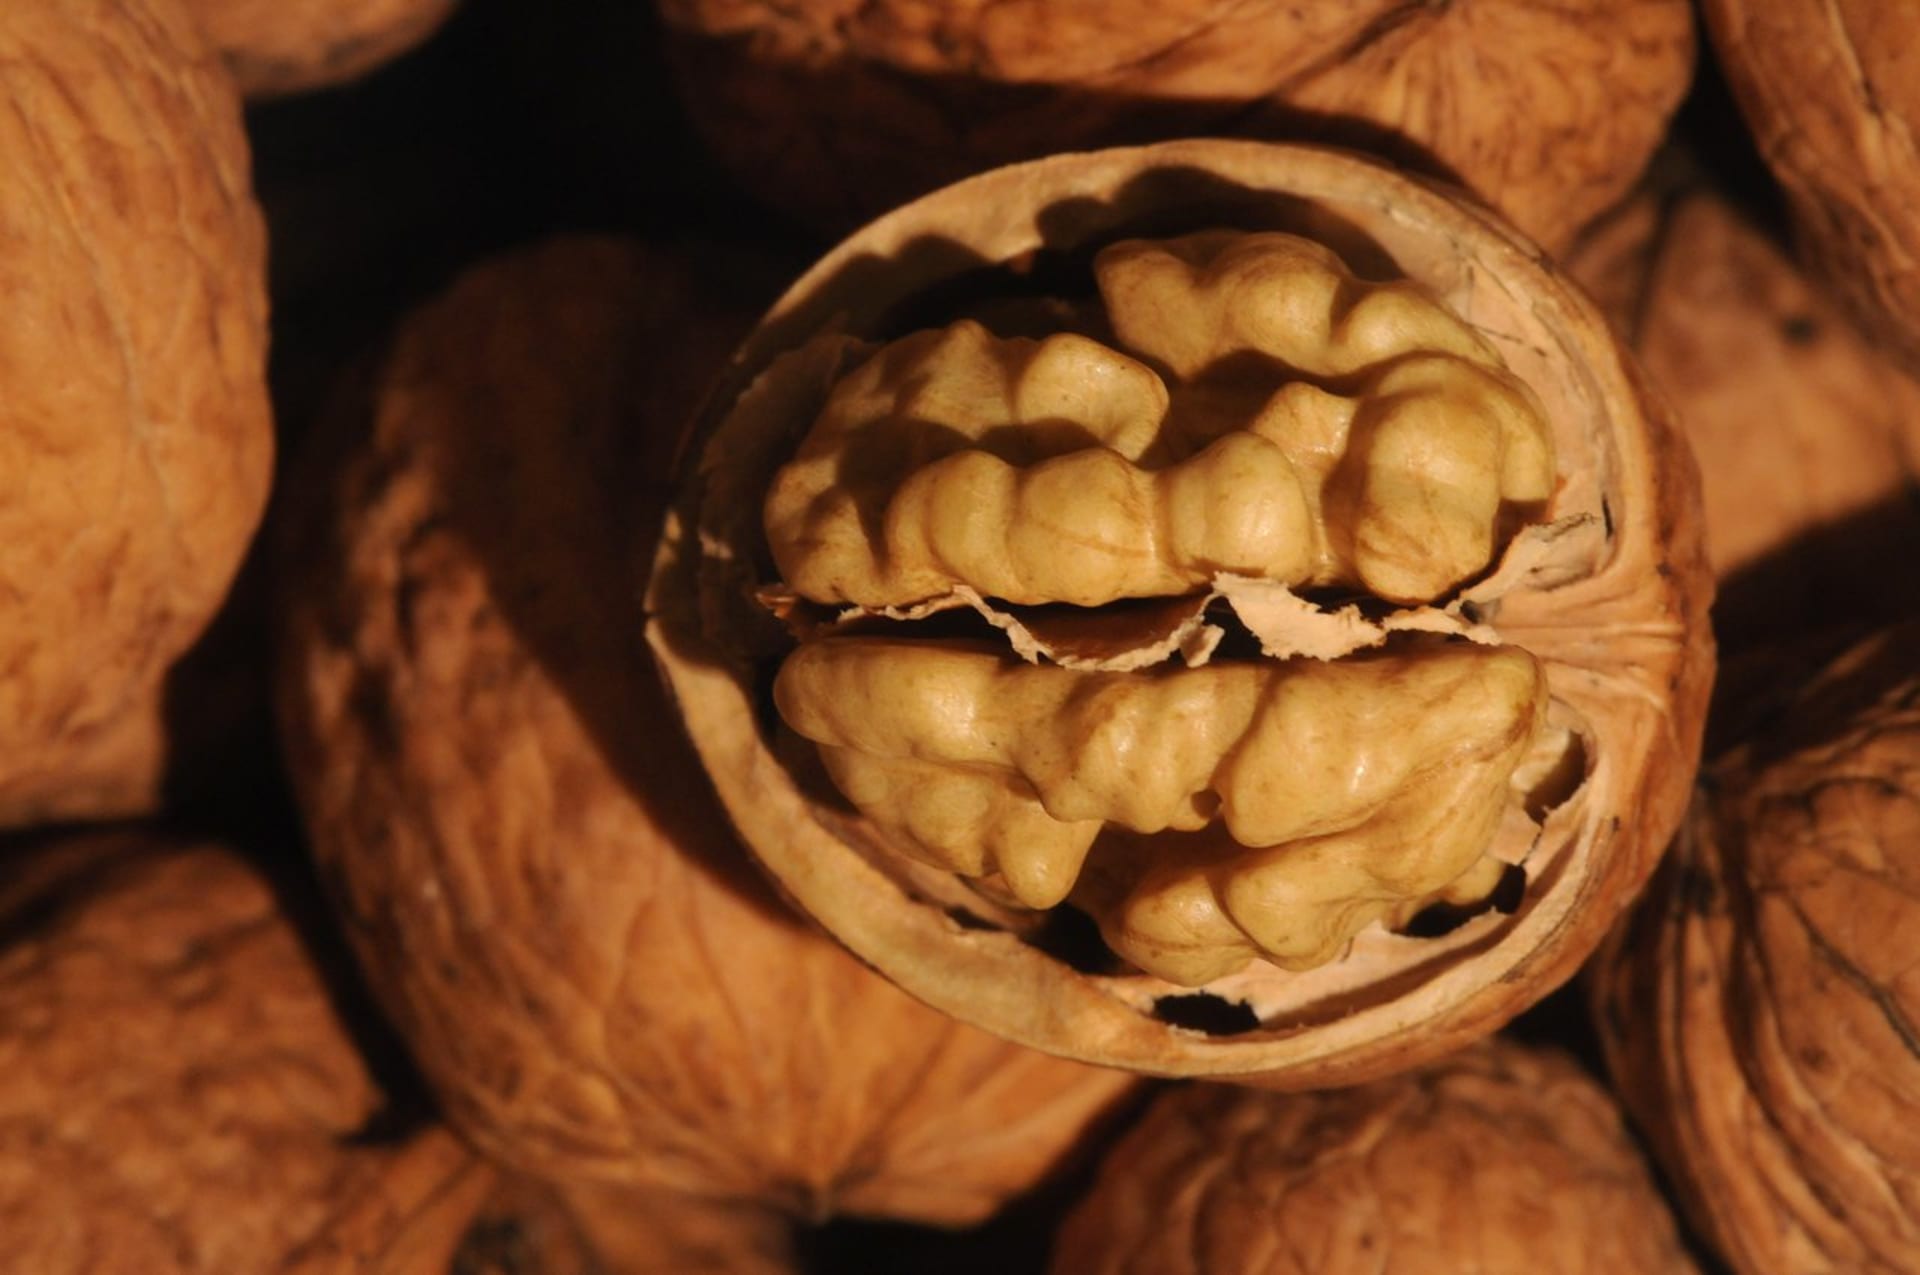 Vyhrálo lidstvo nad alergií na ořechy?